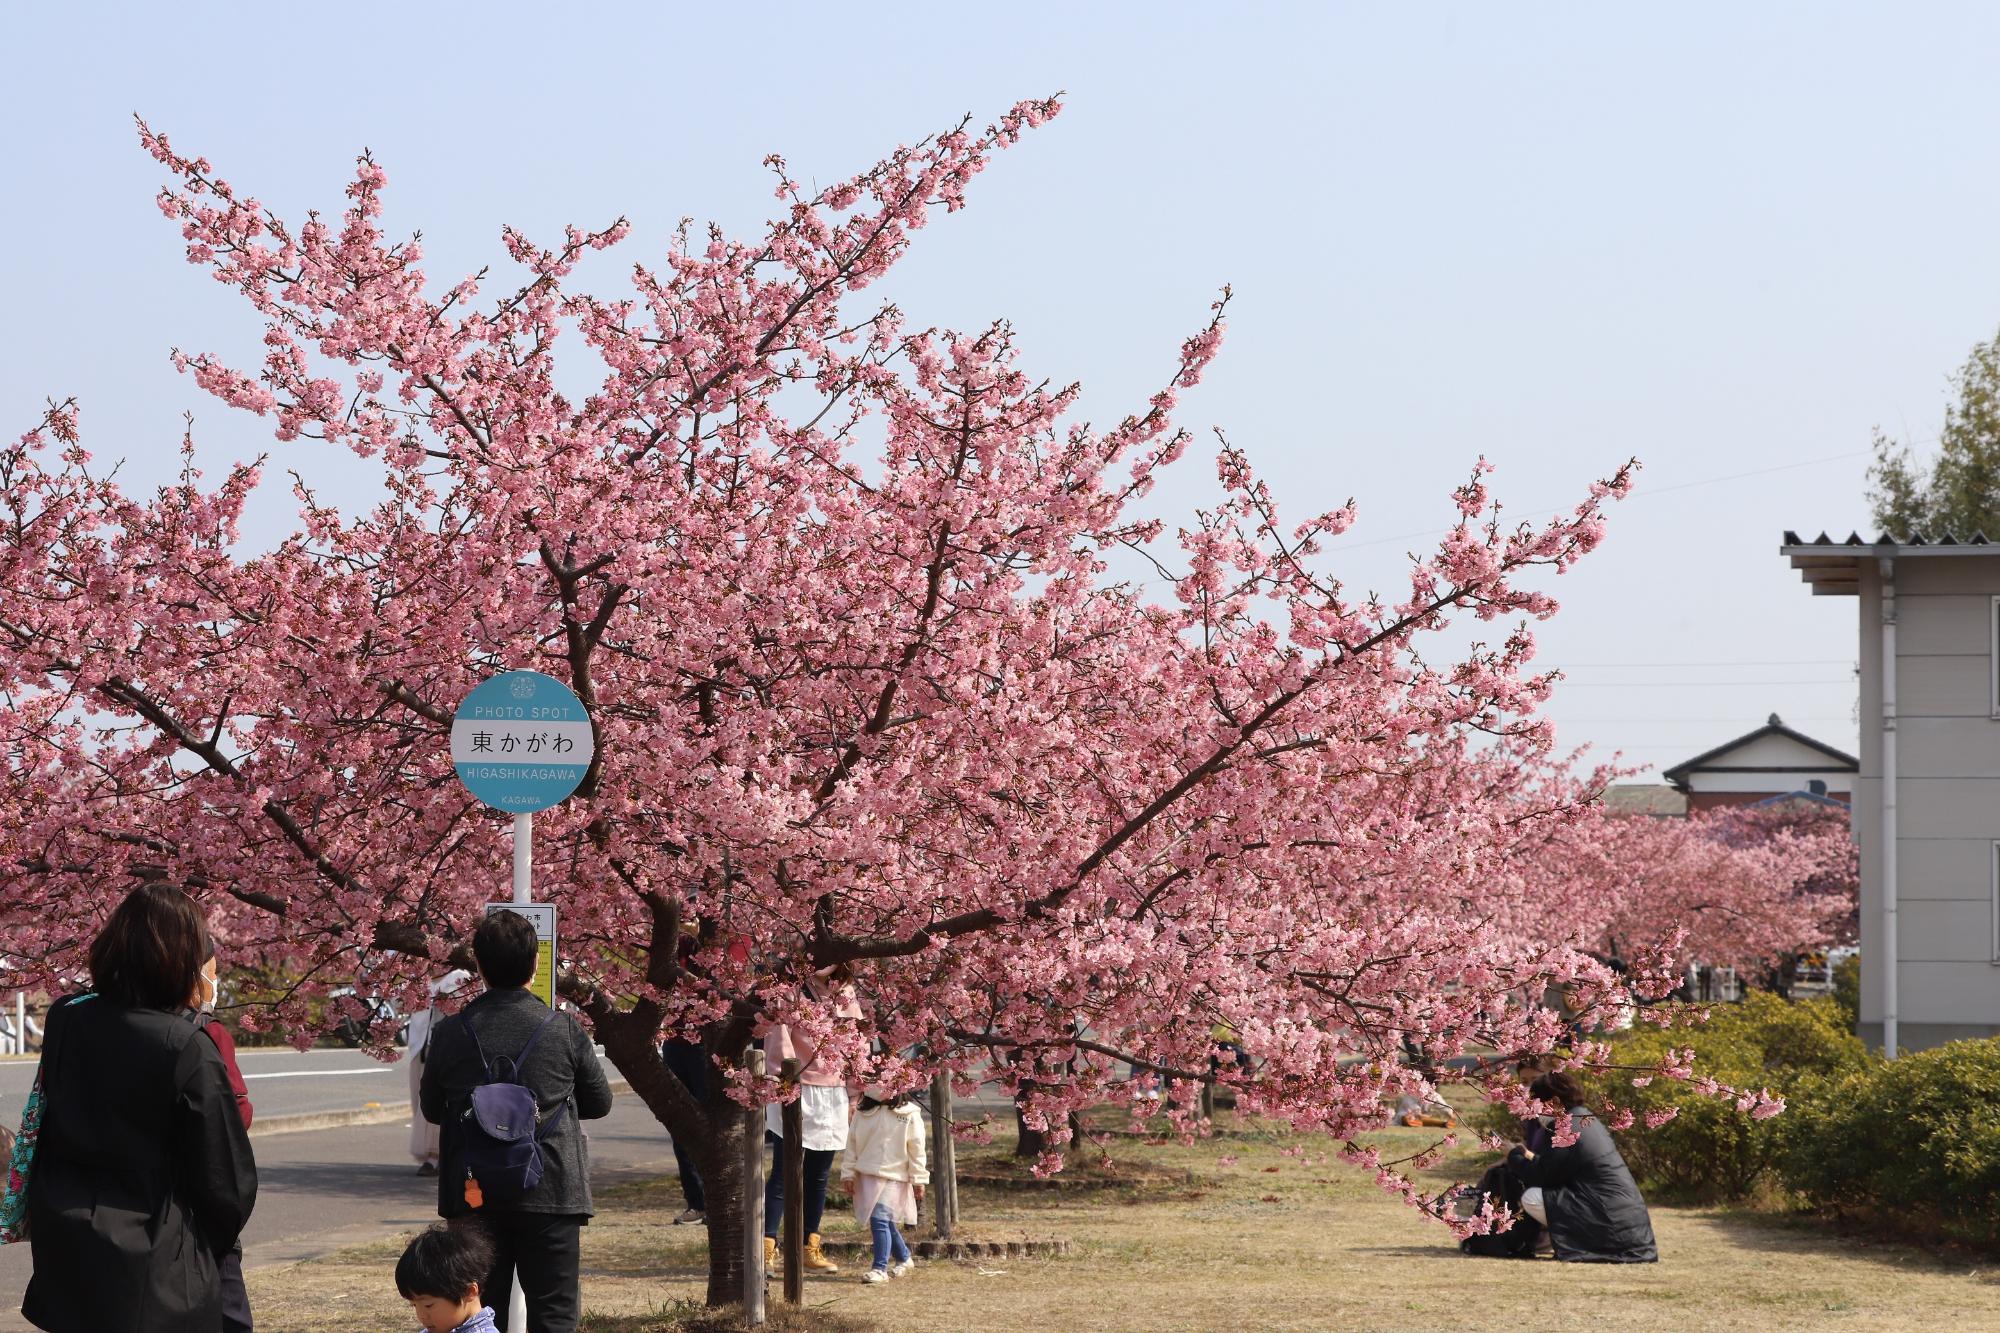 南側からみた満開の河津桜とバス停型看板